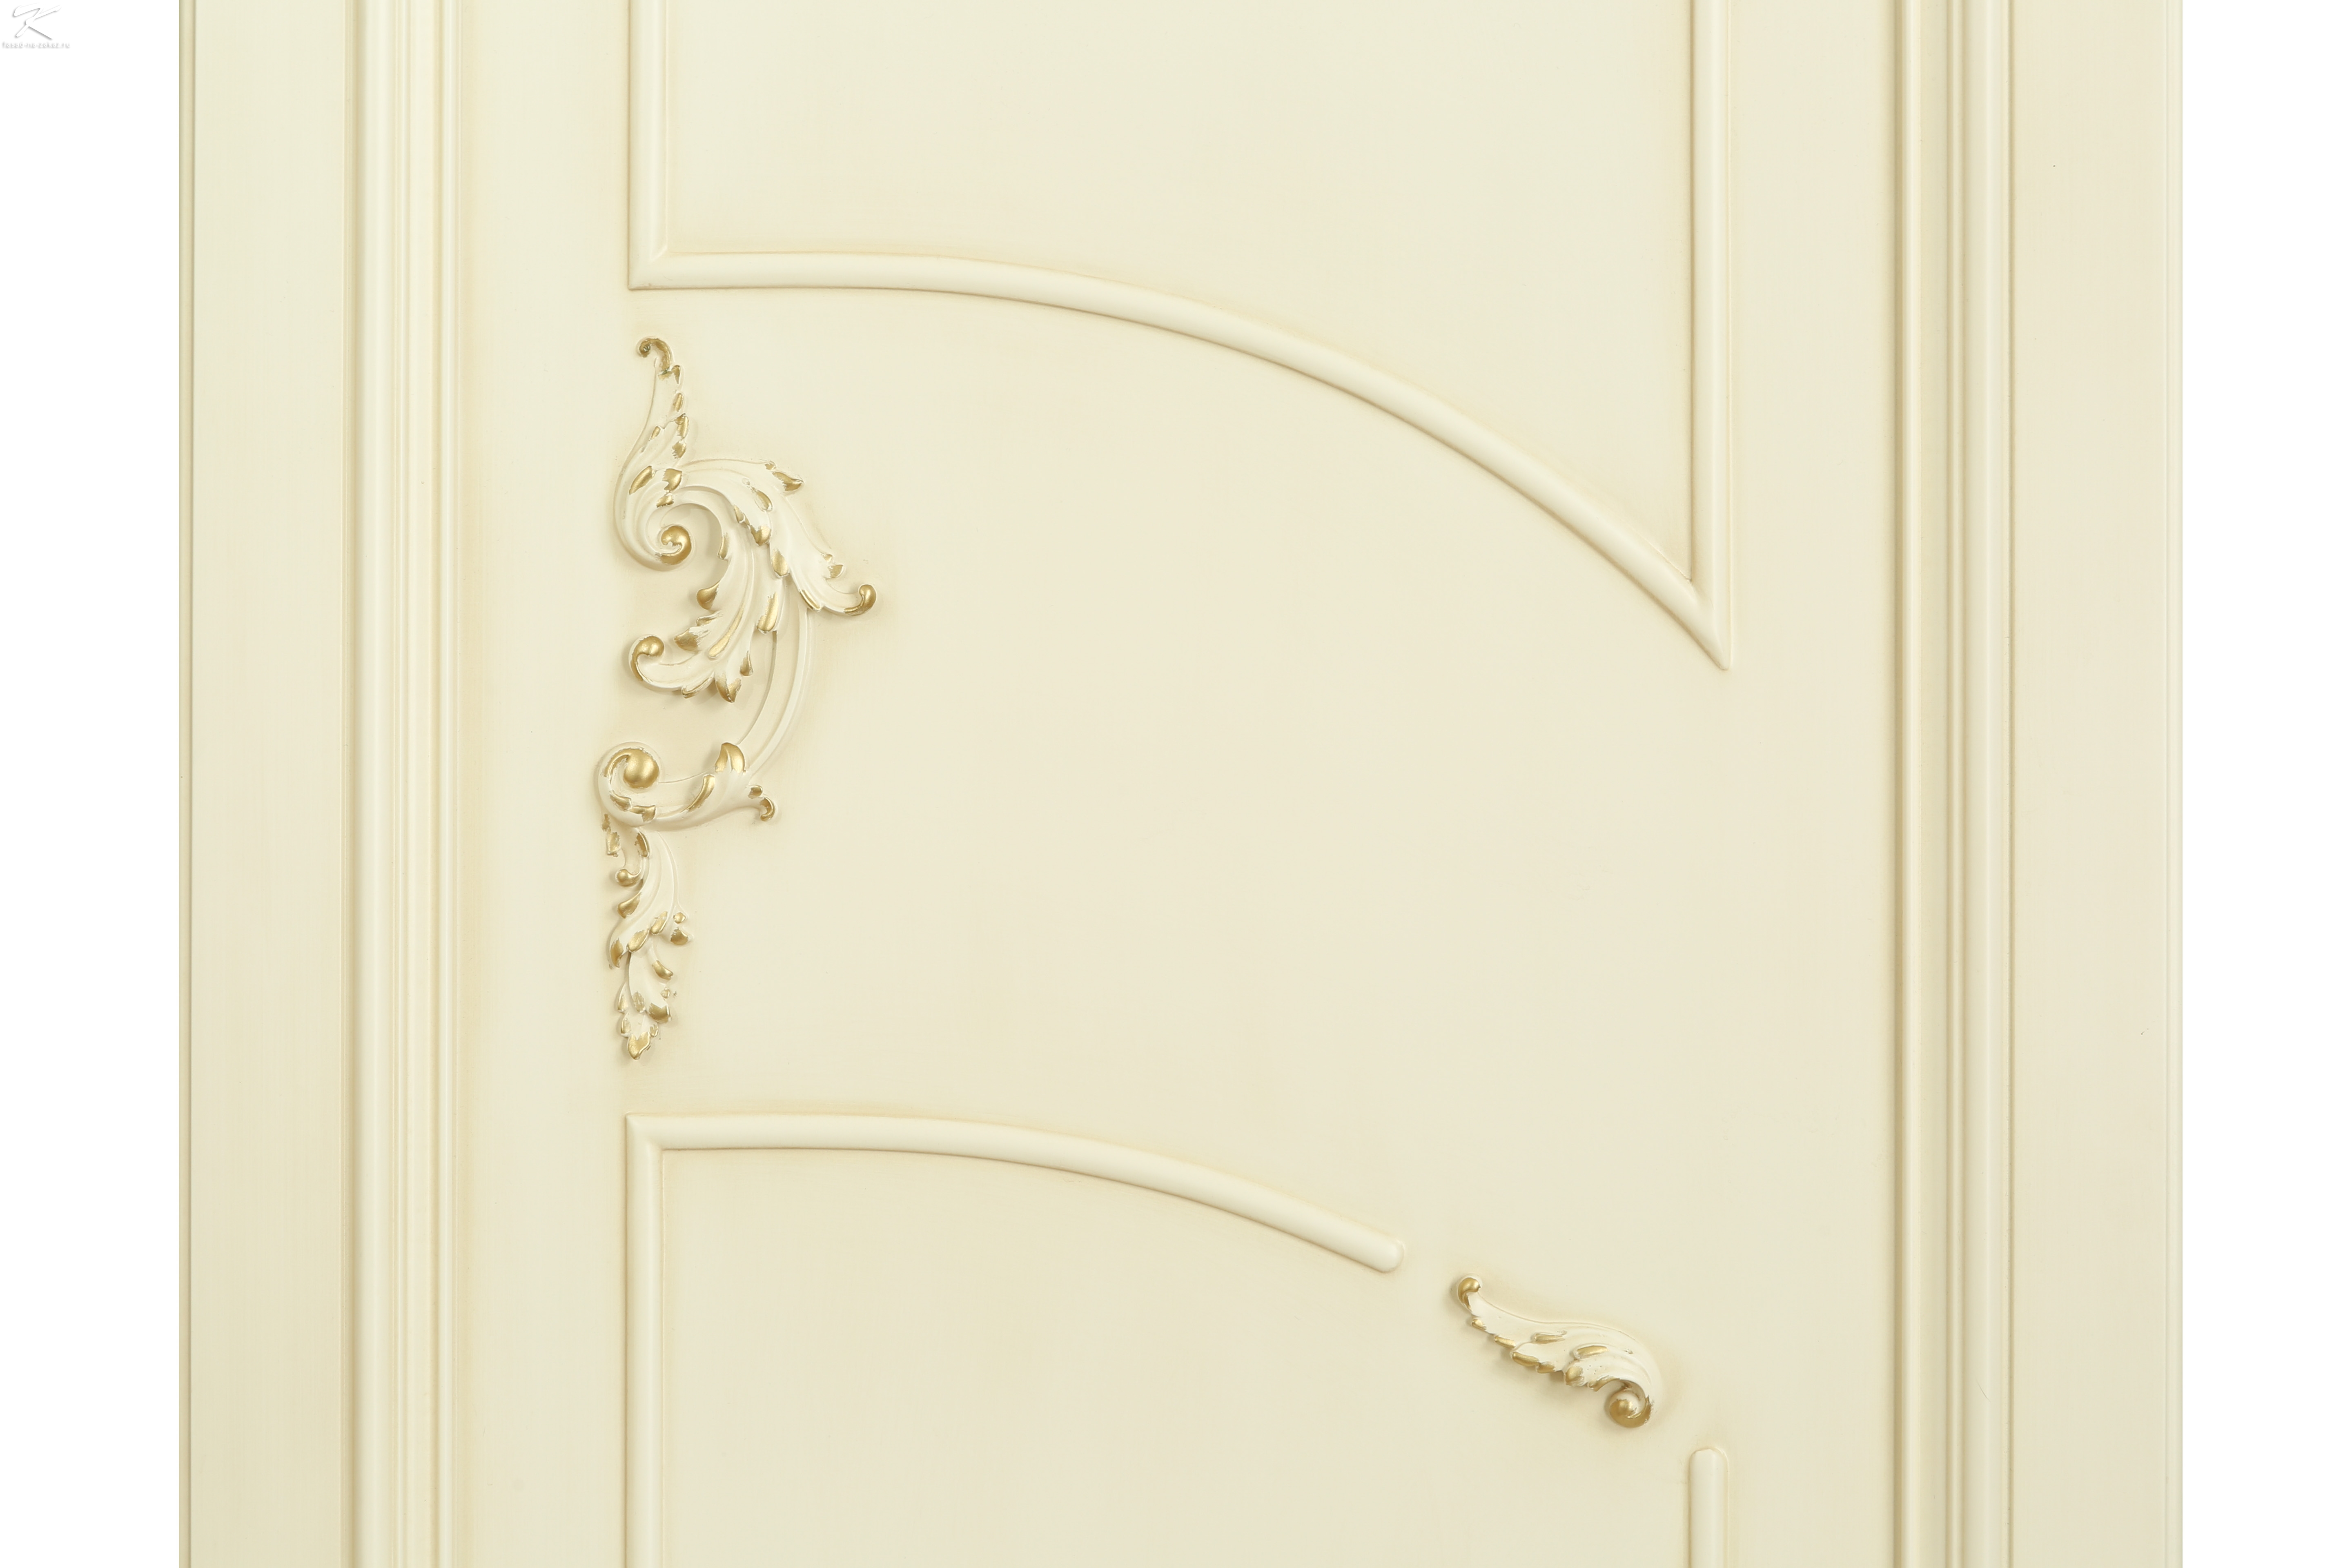 Оригинальные межкомнатные двери — атрибут стильного интерьера